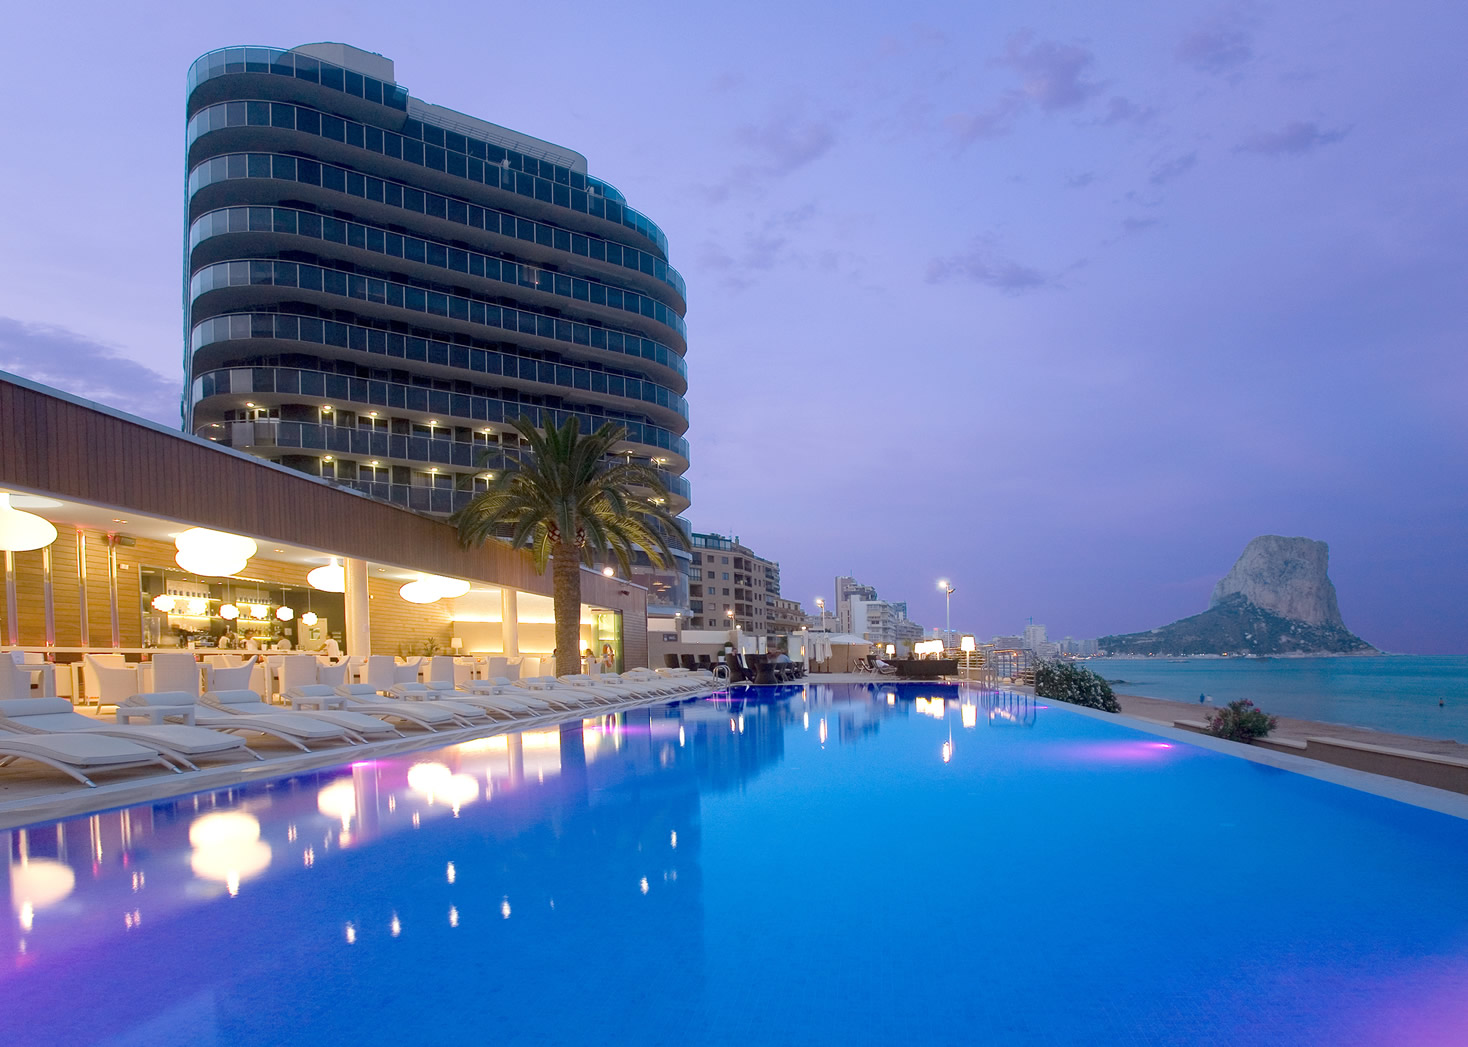 Описание отеля: Gran Hotel Sol y Mar находится в городке Calpe принадлежаще...